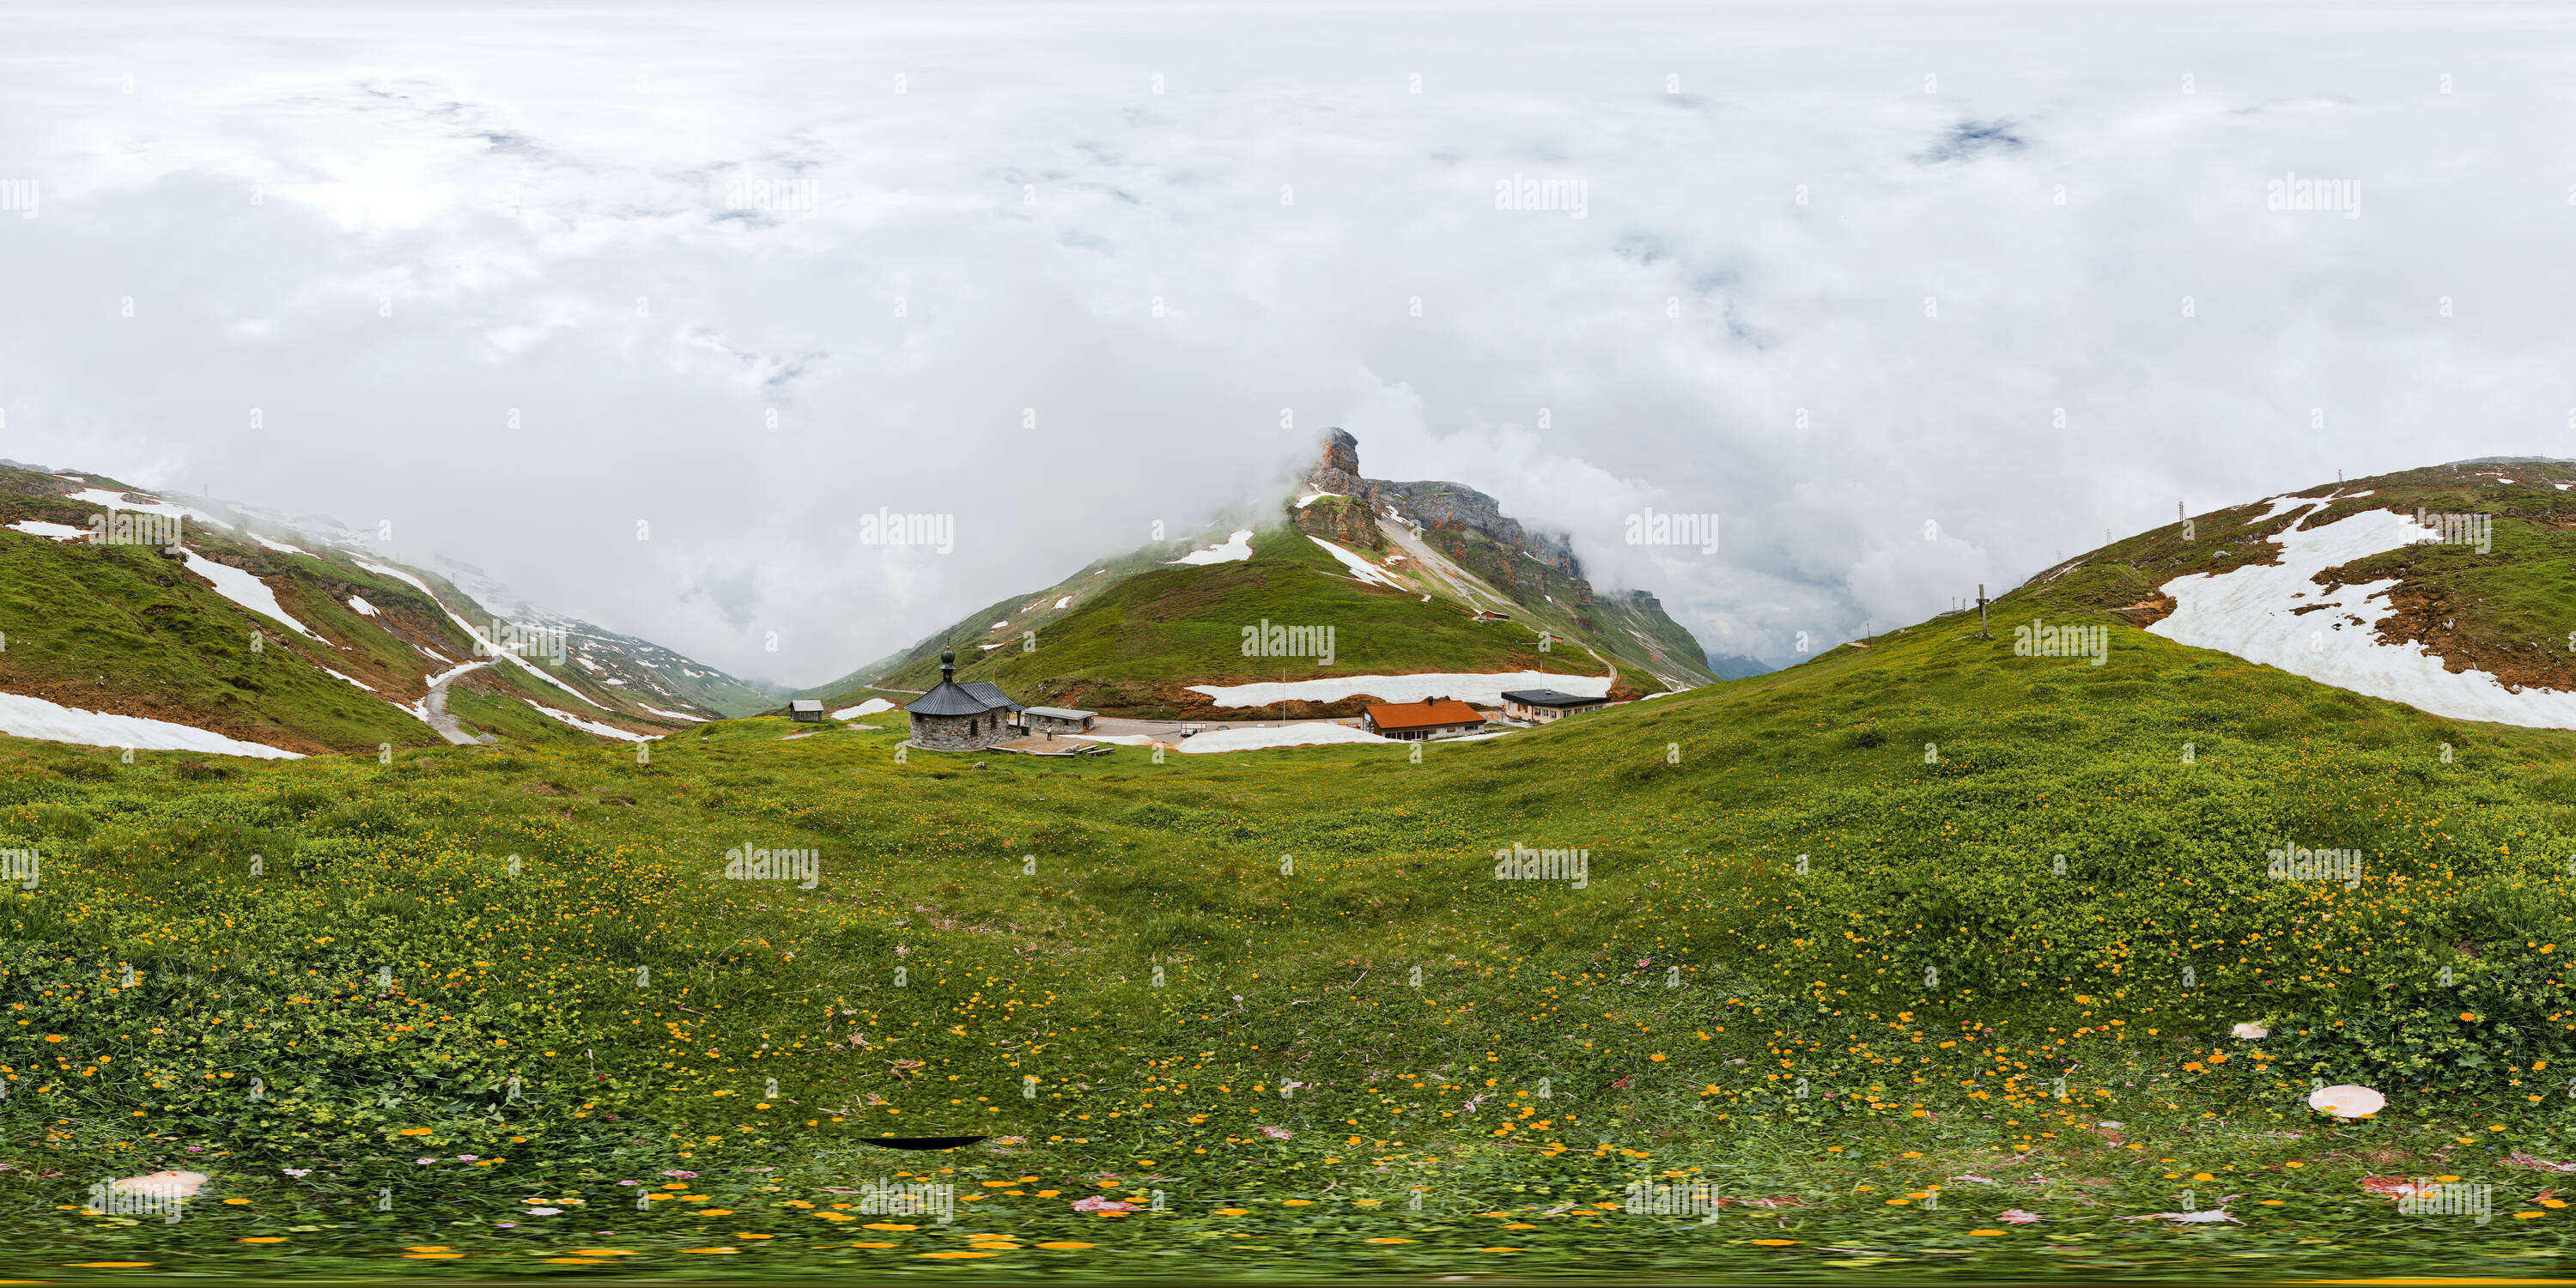 Vue panoramique à 360° de Col du Klausen